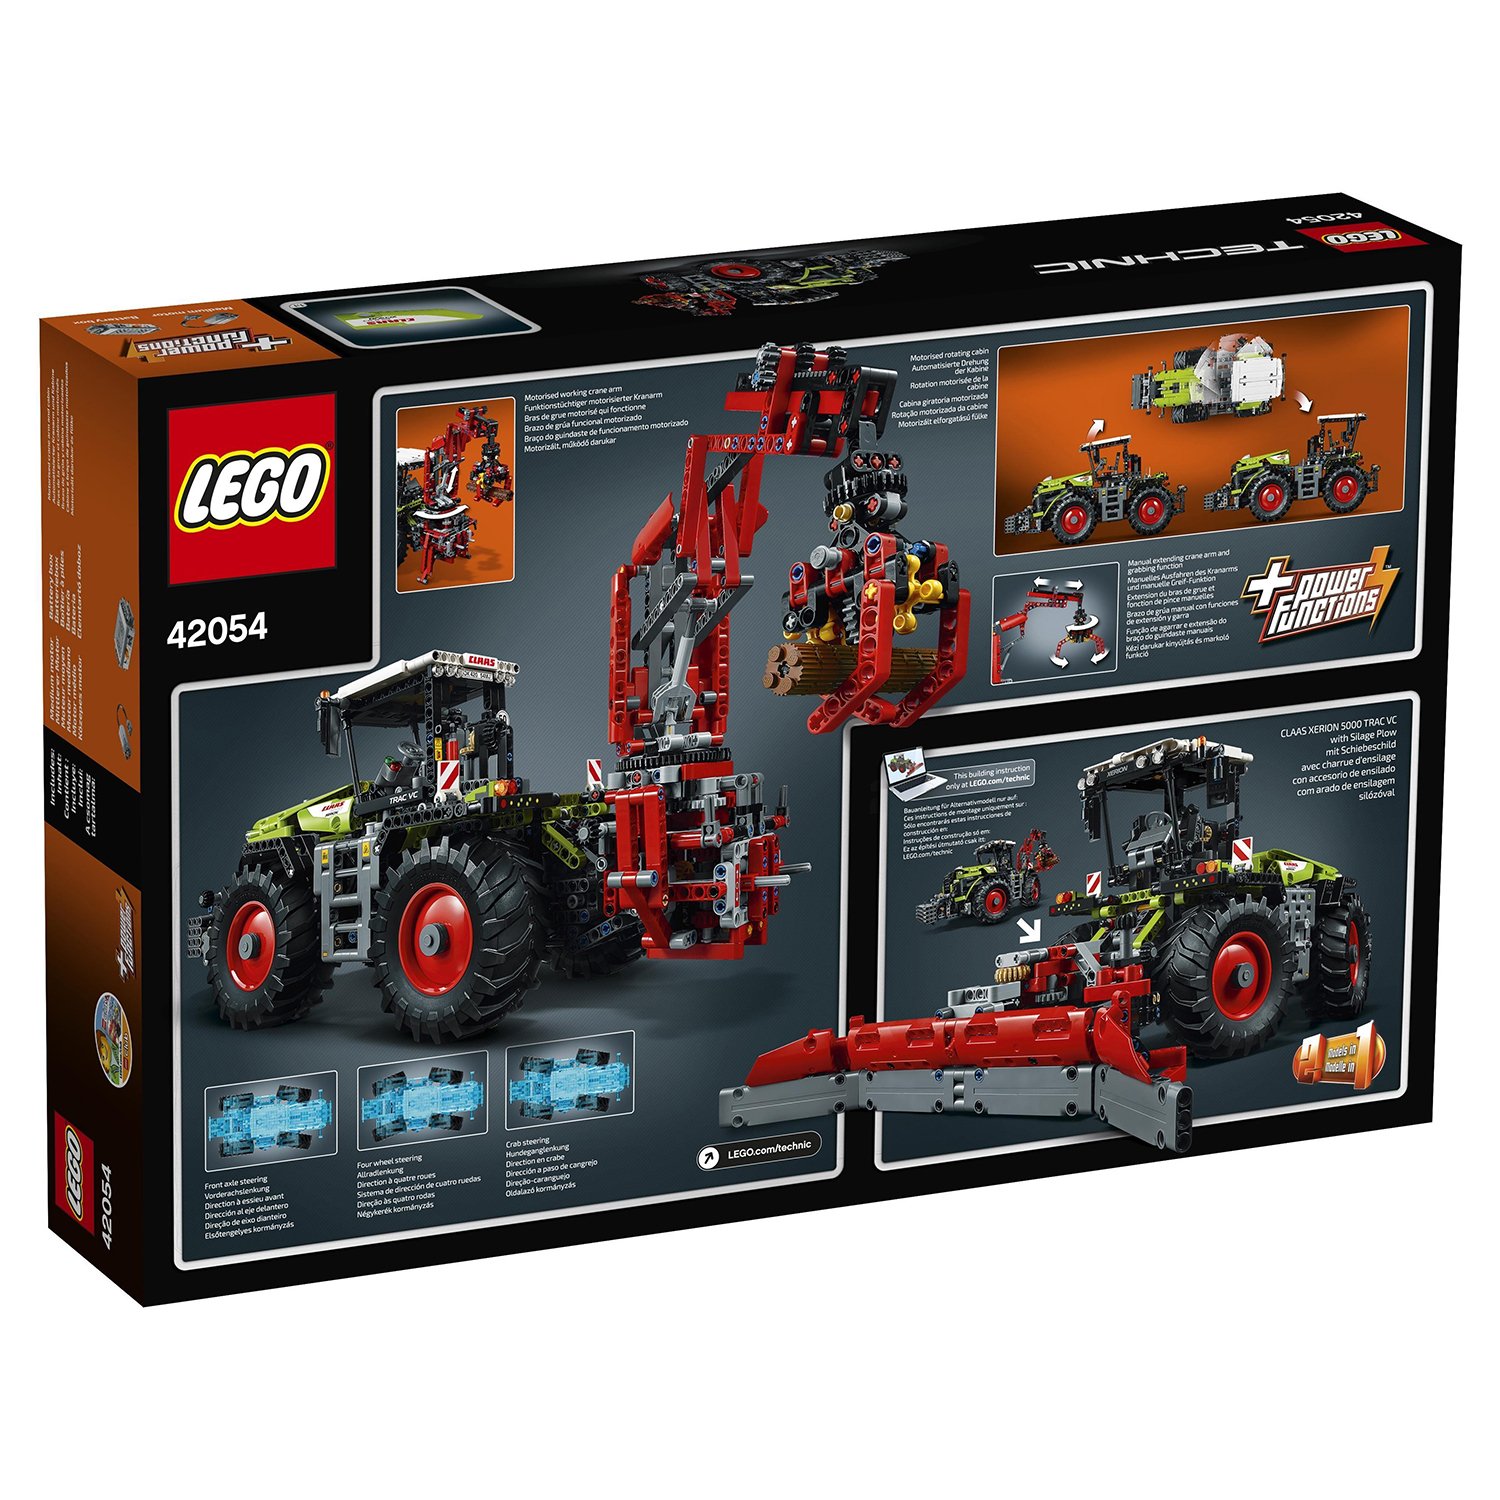 Электромеханический конструктор LEGO Technic 42054 Мощный трактор Claas Xerion 5000